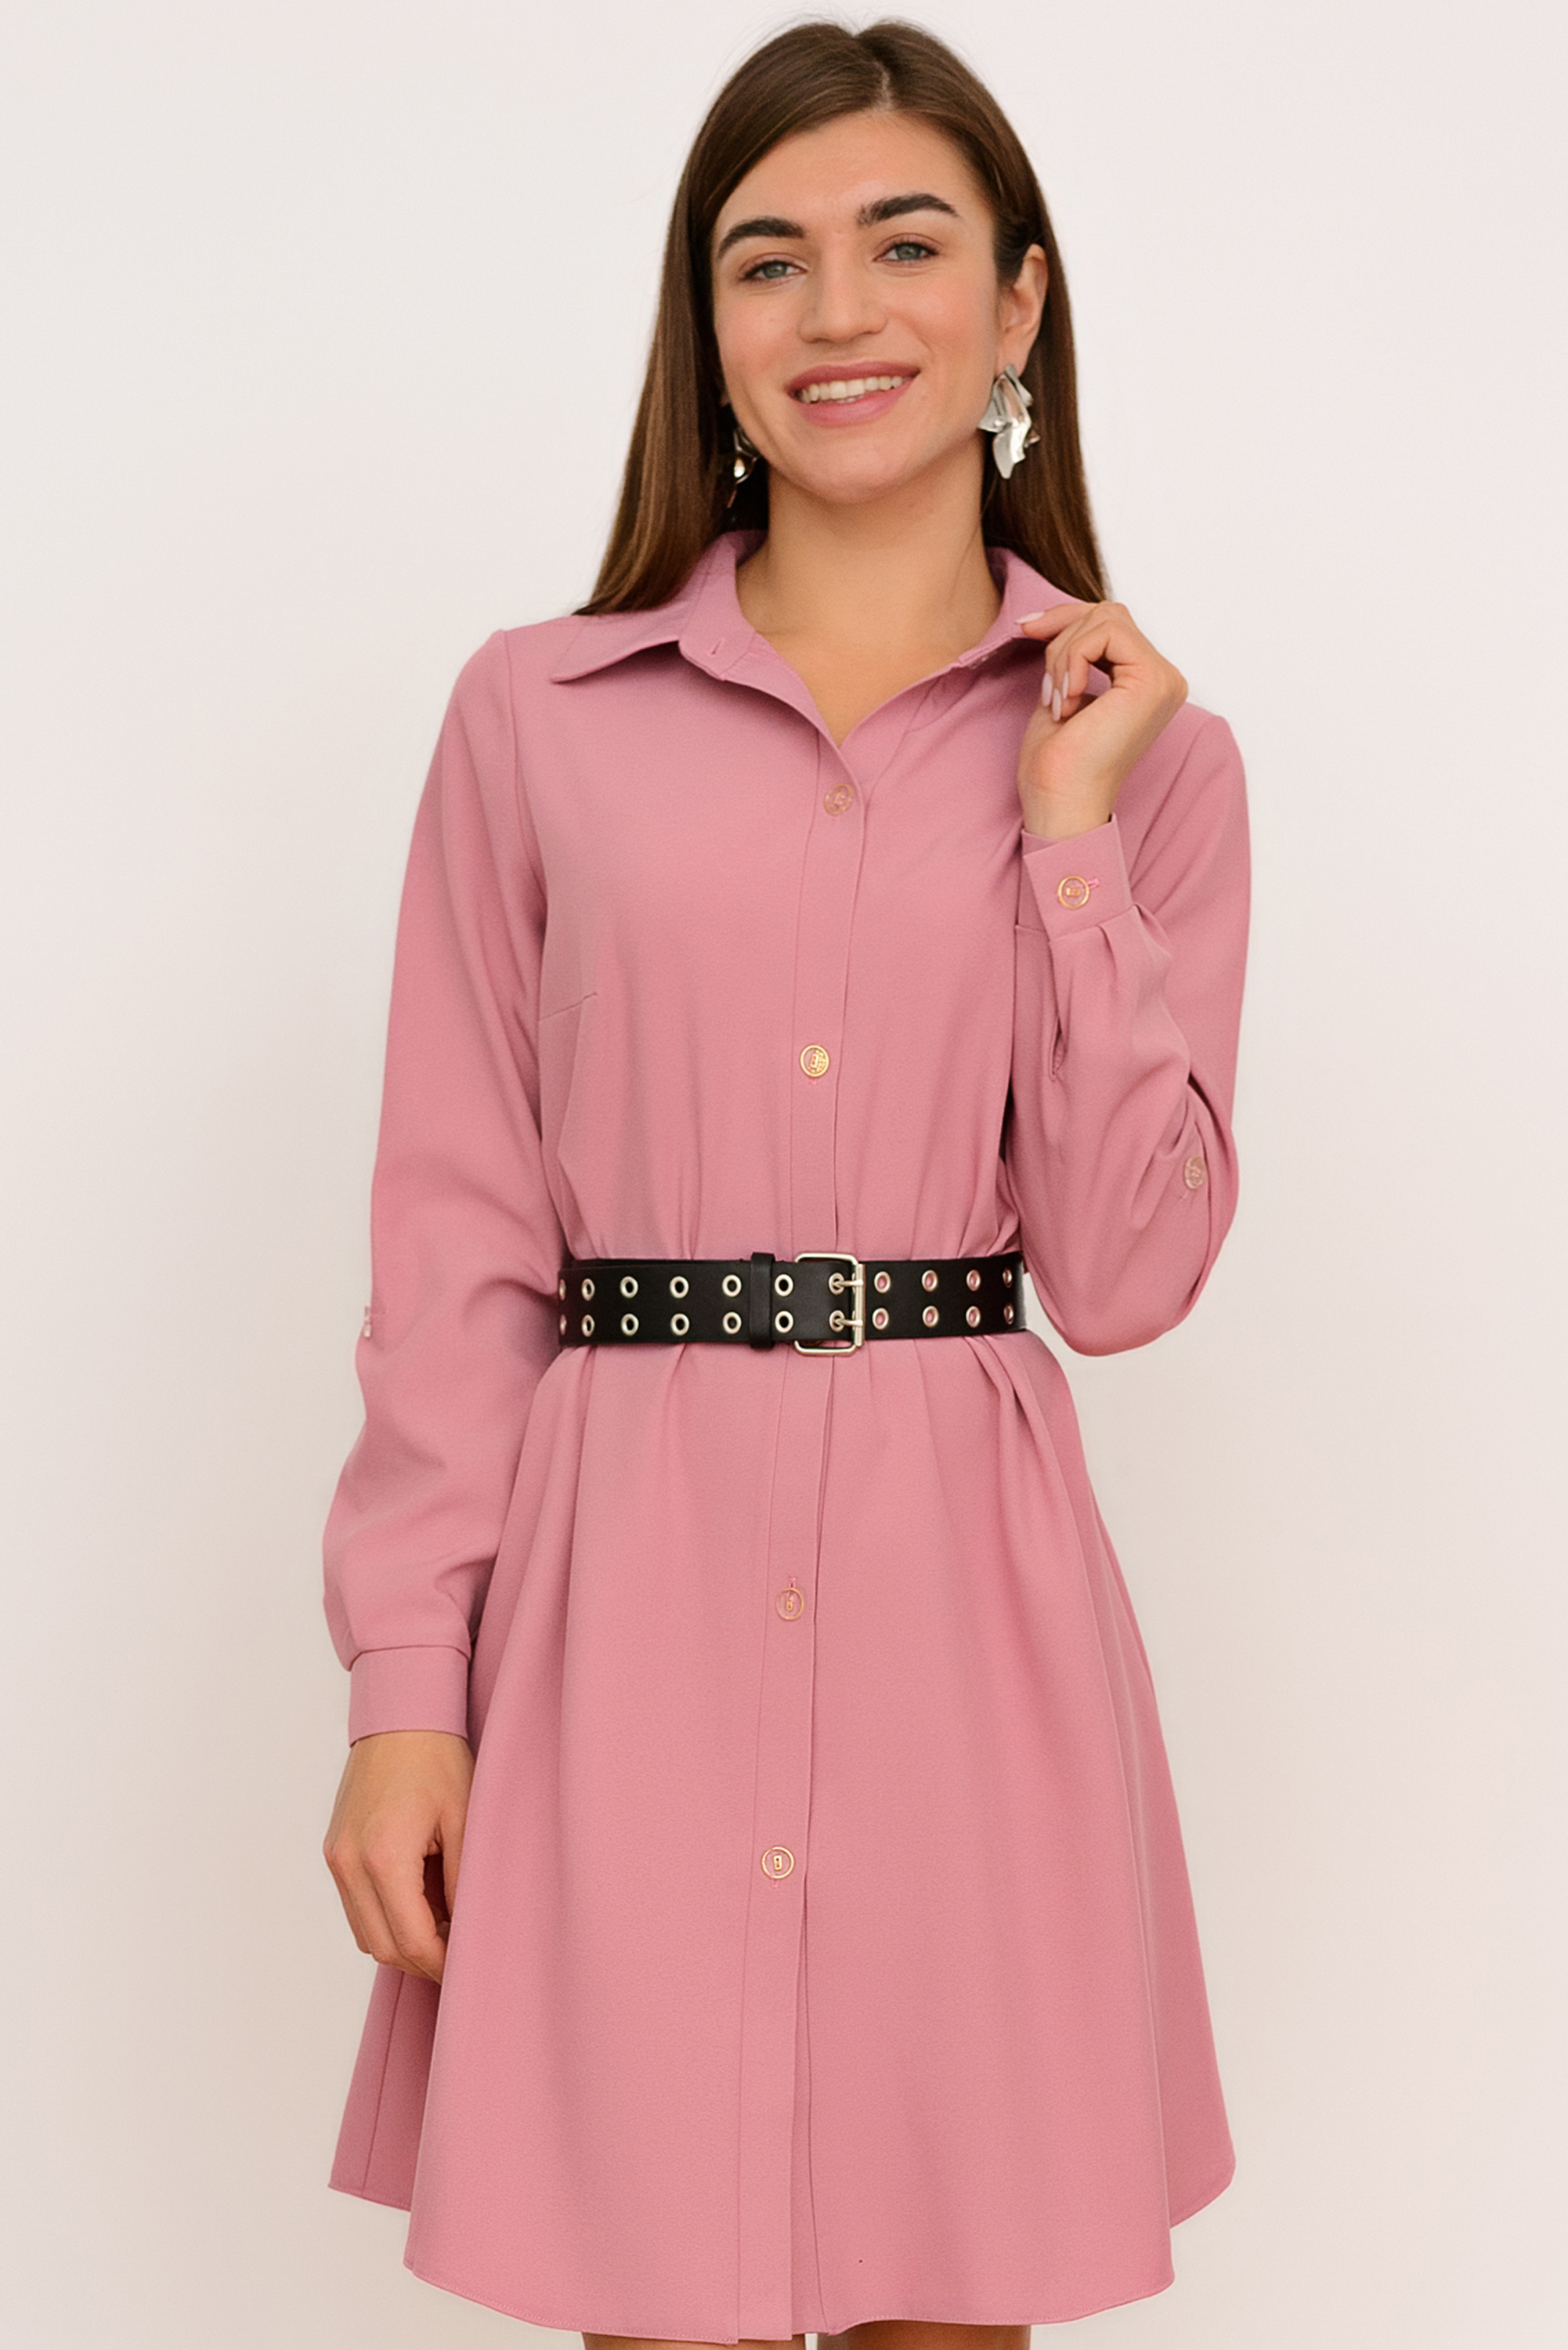 Платье-рубашка (розовый) Р11-566